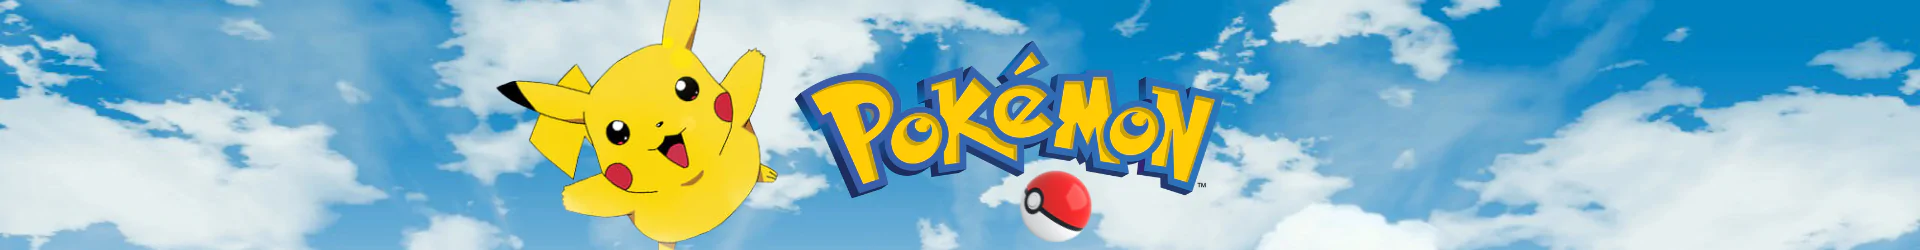 Pokemon socken banner